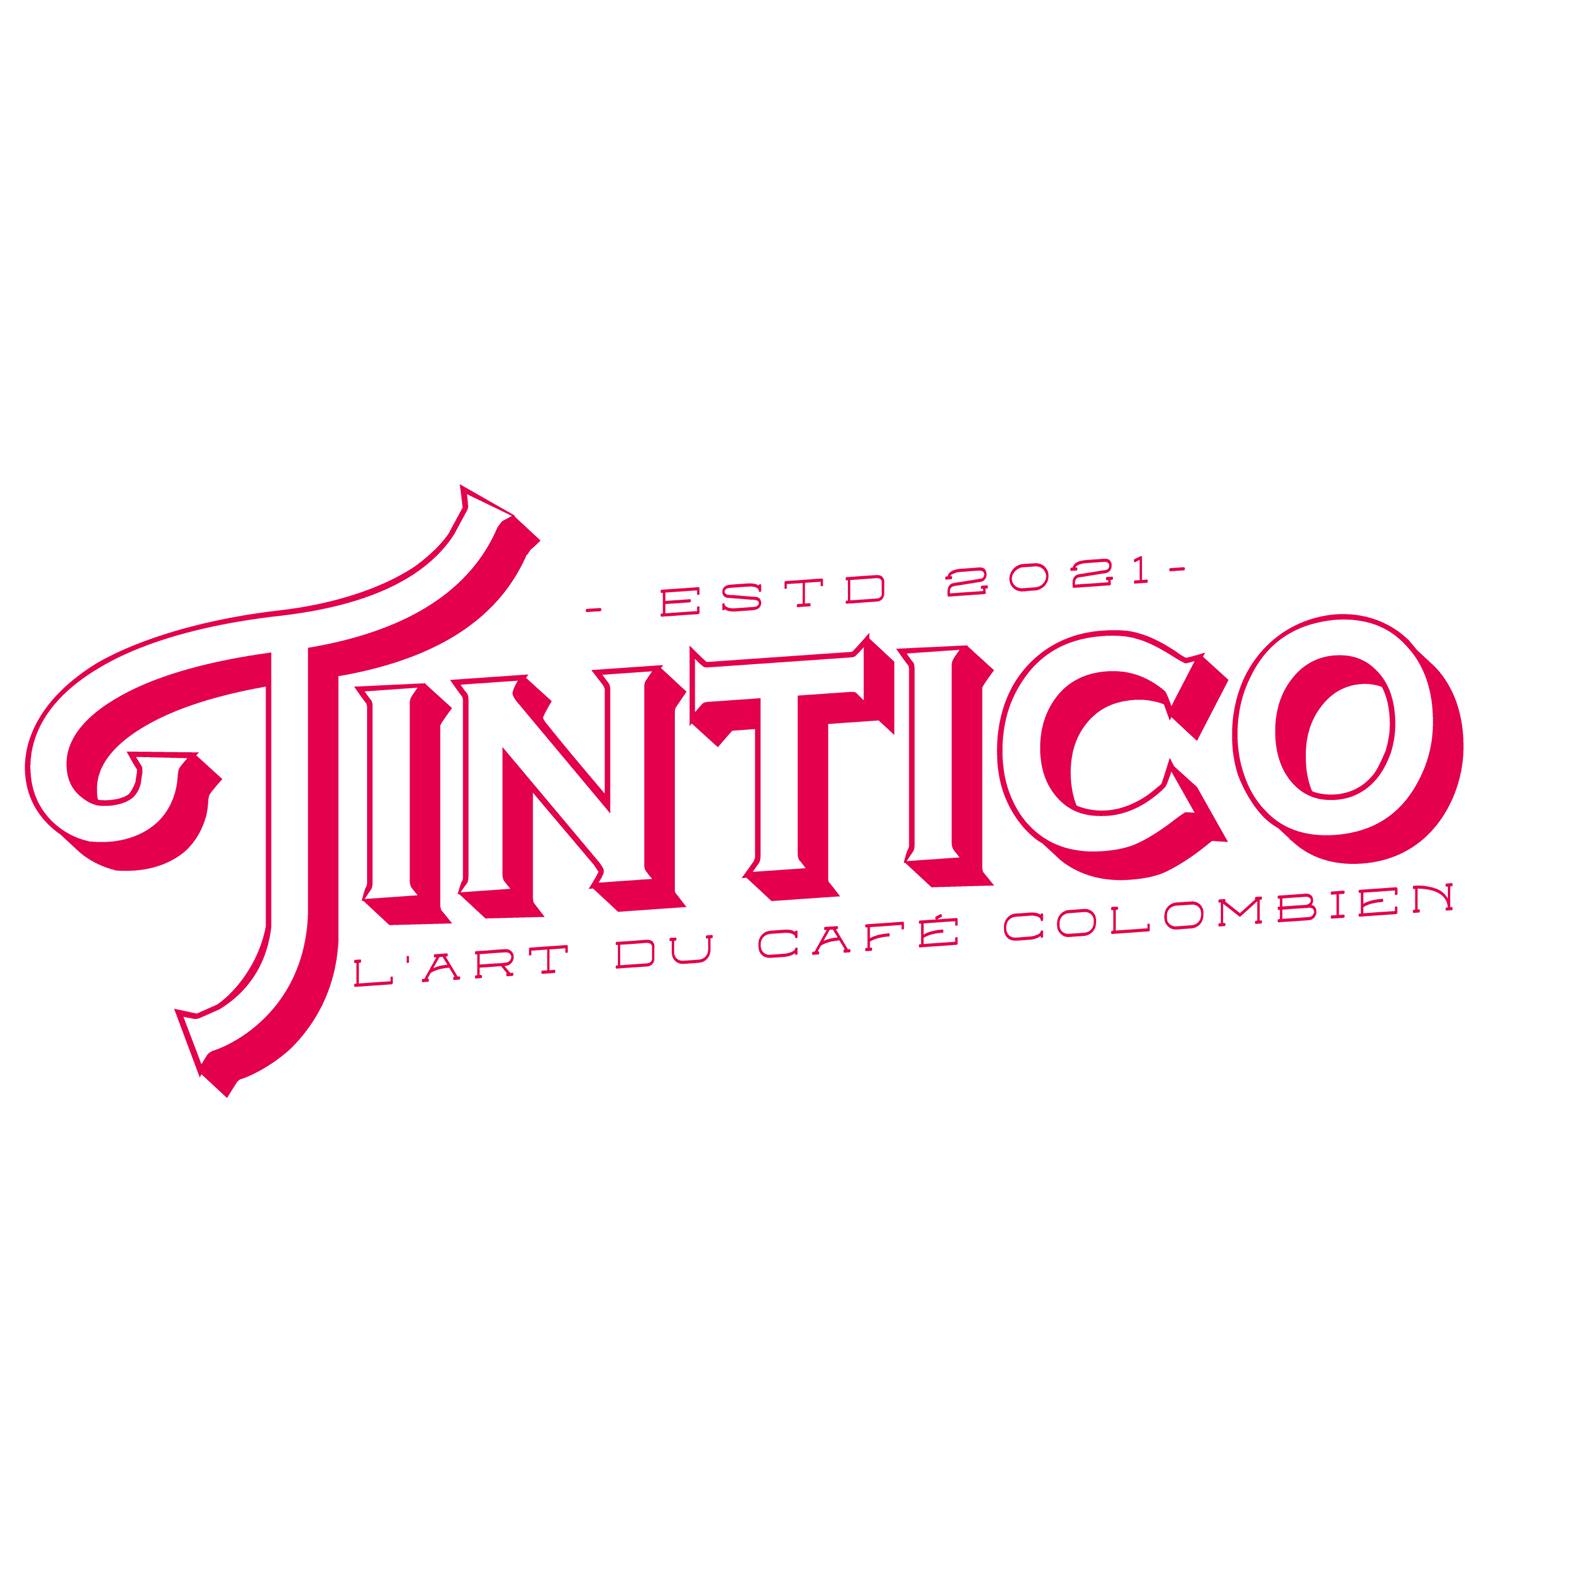 Tintico - L'Art du café colombien